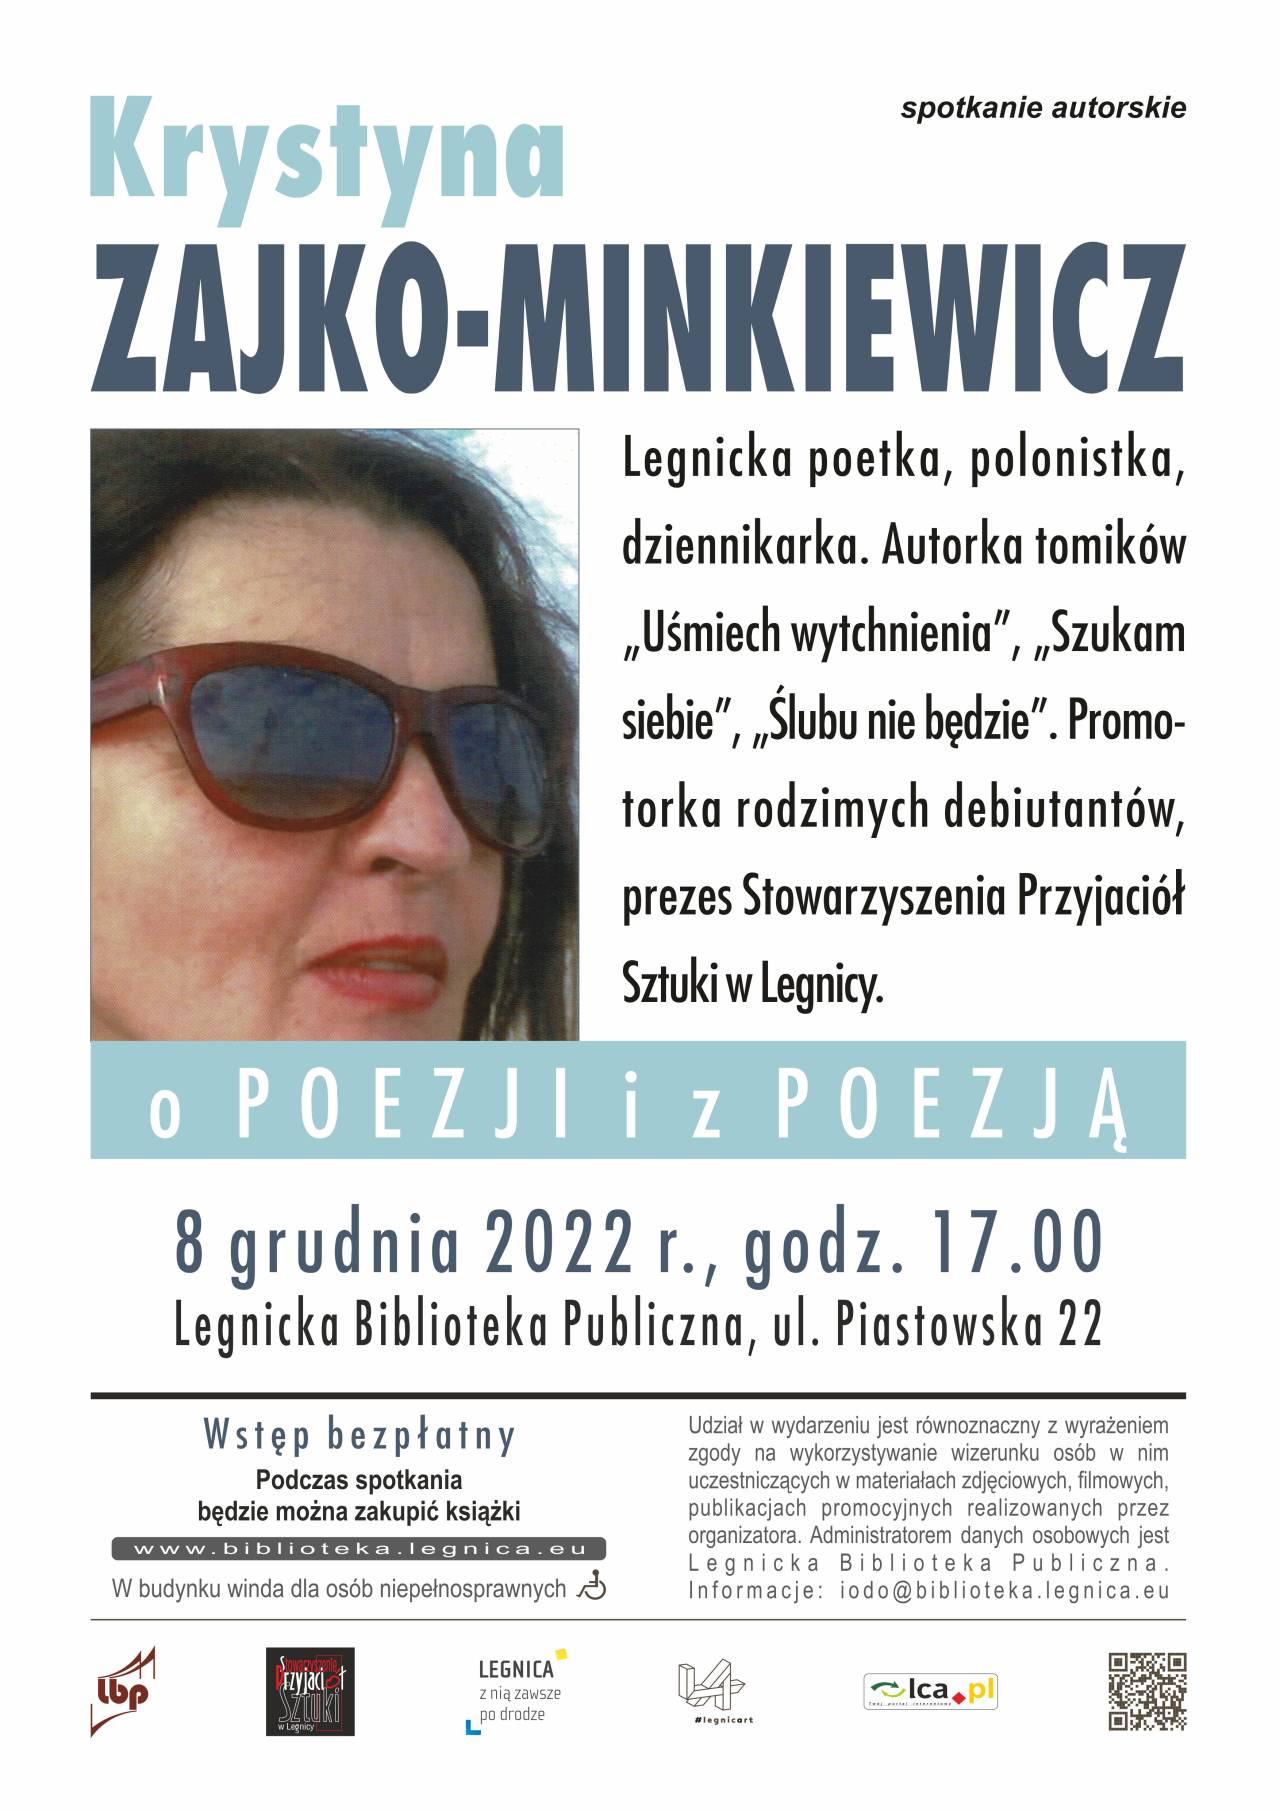 Legnicka Biblioteka Publiczna zaprasza na spotkanie autorskie z Krystyną Zajko-Minkiewicz